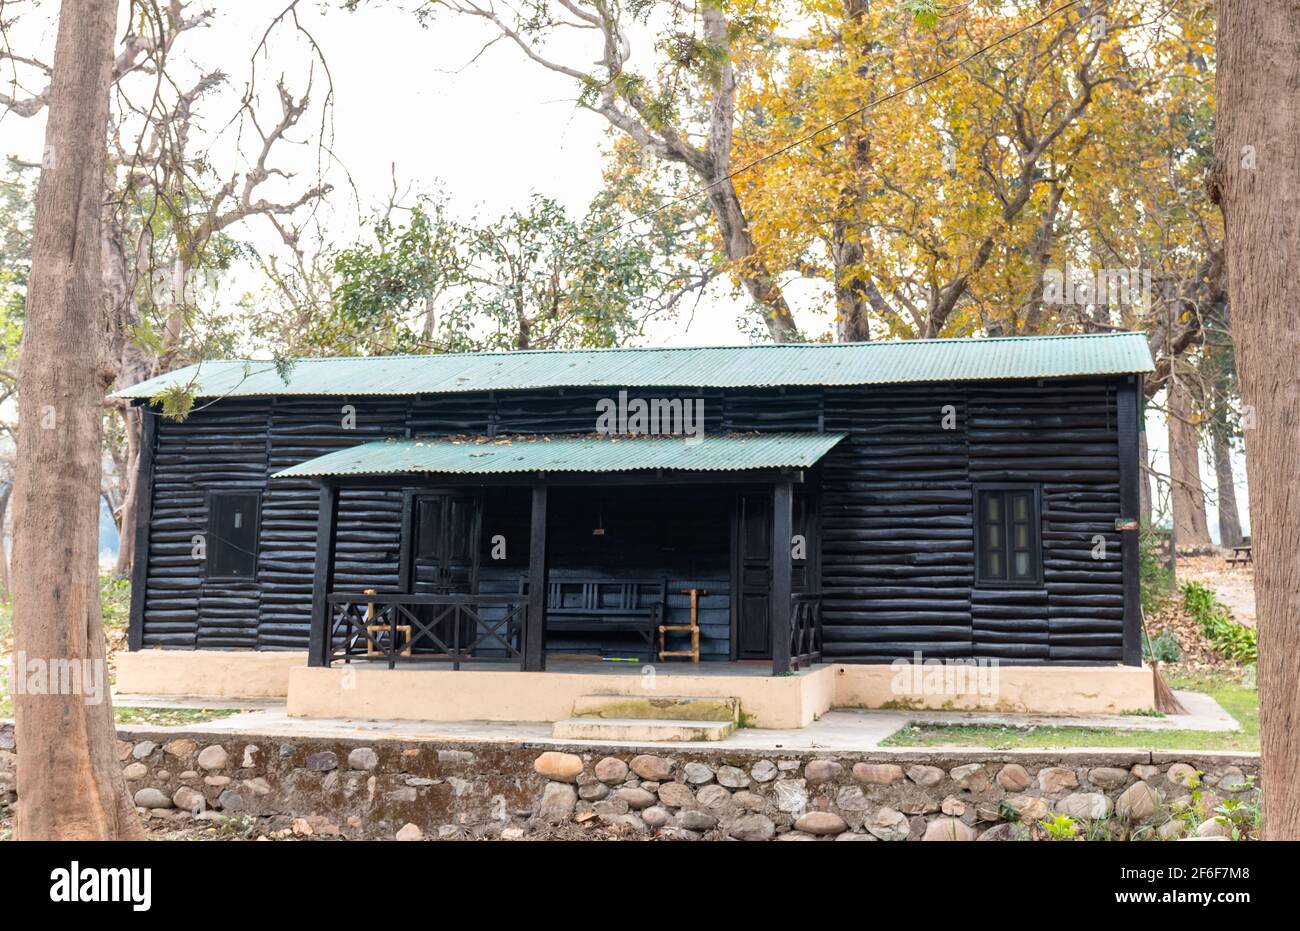 Vue sur l'architecture des maisons de repos de forêt dans le parc national de Jim Corbett Dhikala zone pour les touristes de rester pendant leur voyage dans la jungle. Banque D'Images